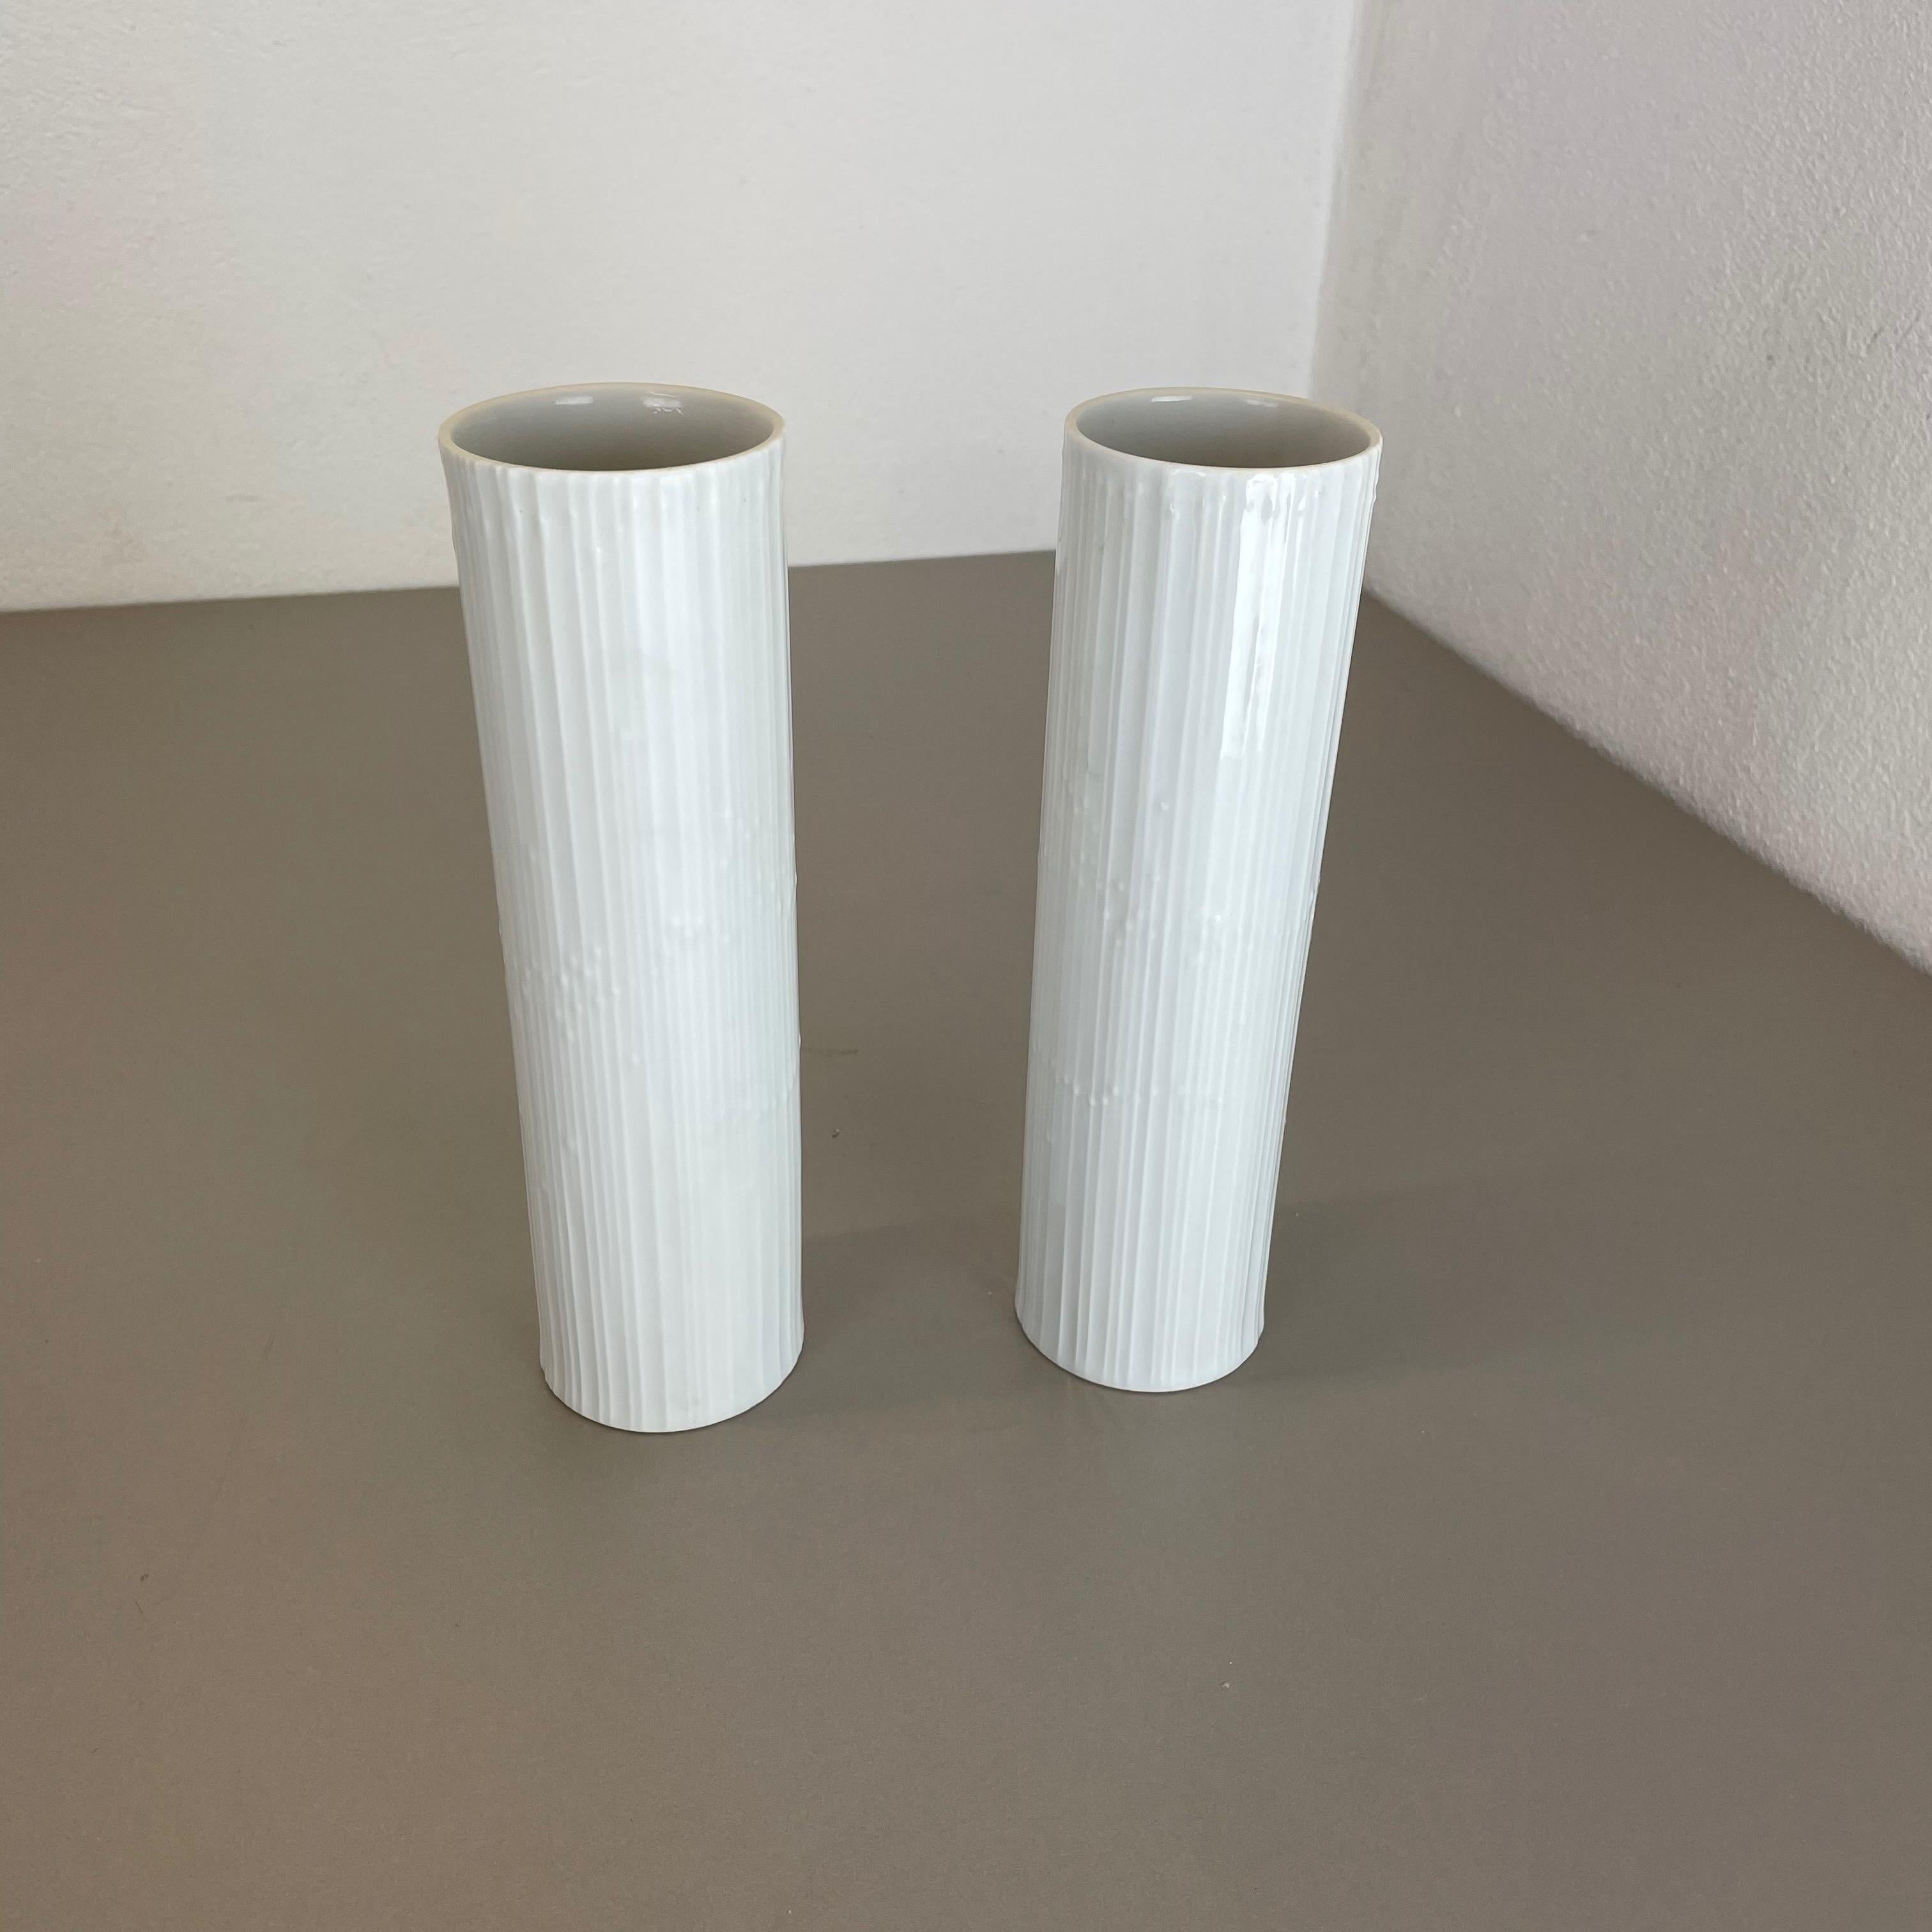 Article :

Ensemble de 2 vases en porcelaine Op Art


Producteur :

Rosenthal, Allemagne


Concepteur :

Tapio Wirkkala



Décennie :

1980s





Cet ensemble original de vases Op Art vintage a été produit dans les années